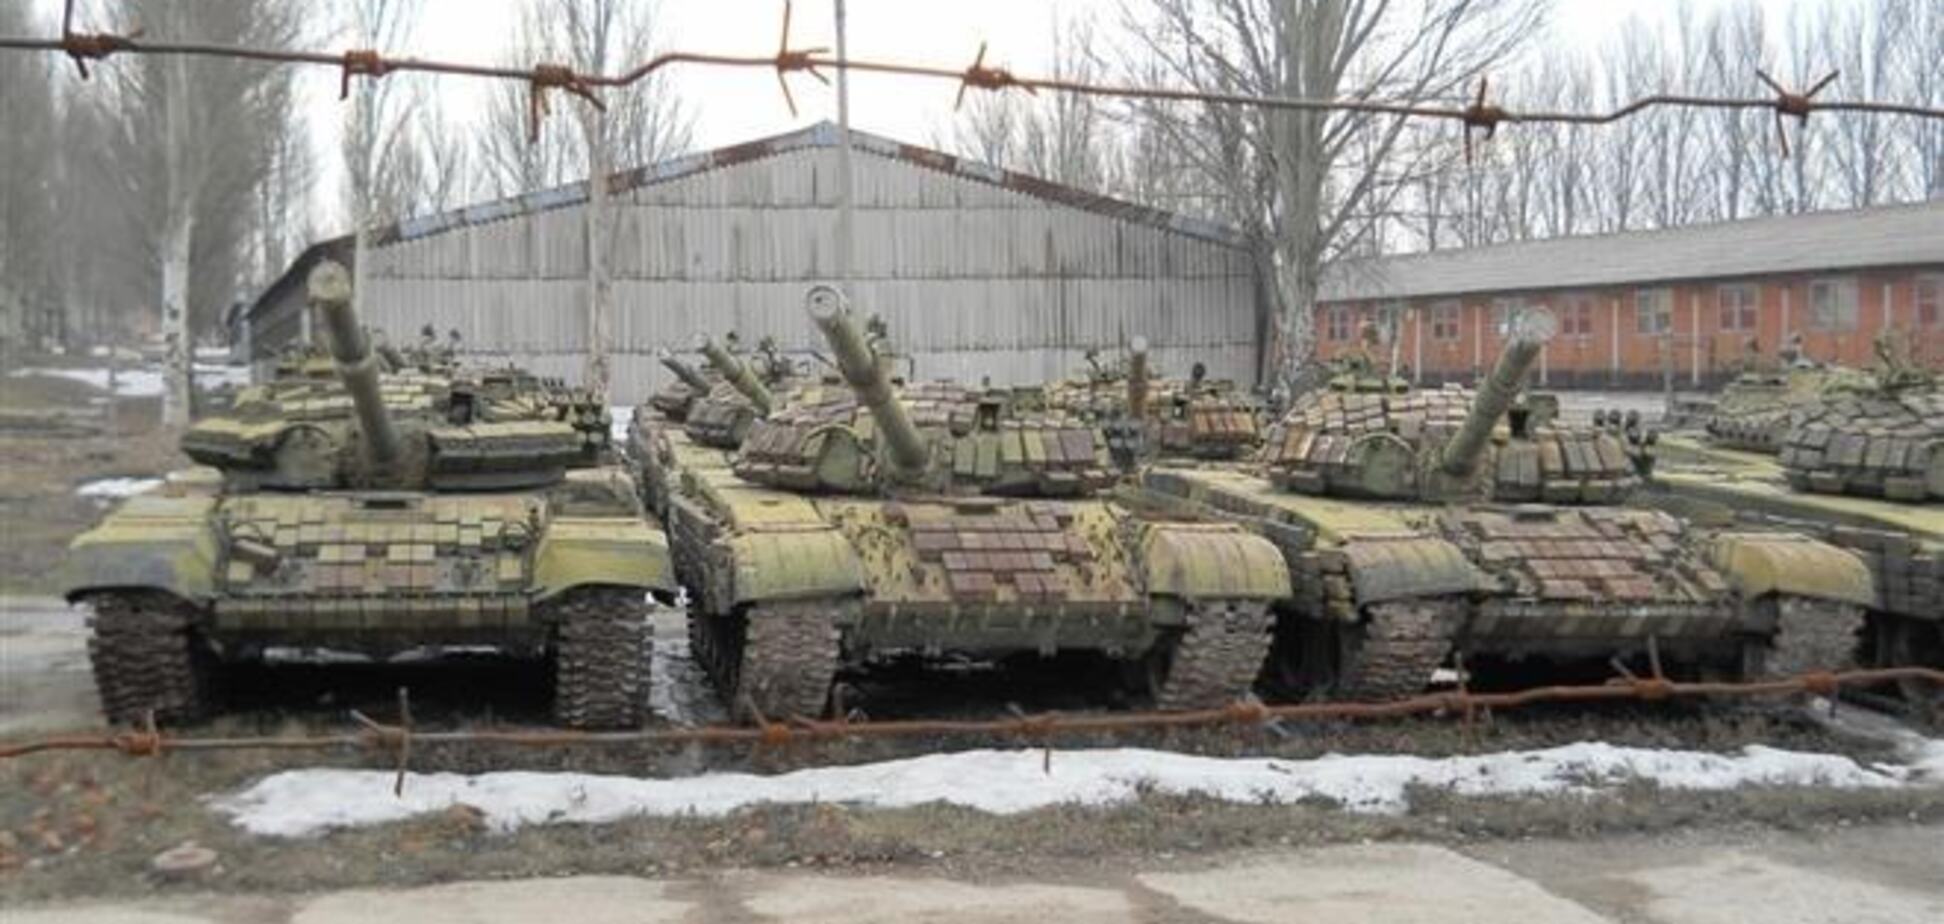 Регионалы в Артемовске готовятся сдать танковую дивизию - эксперт